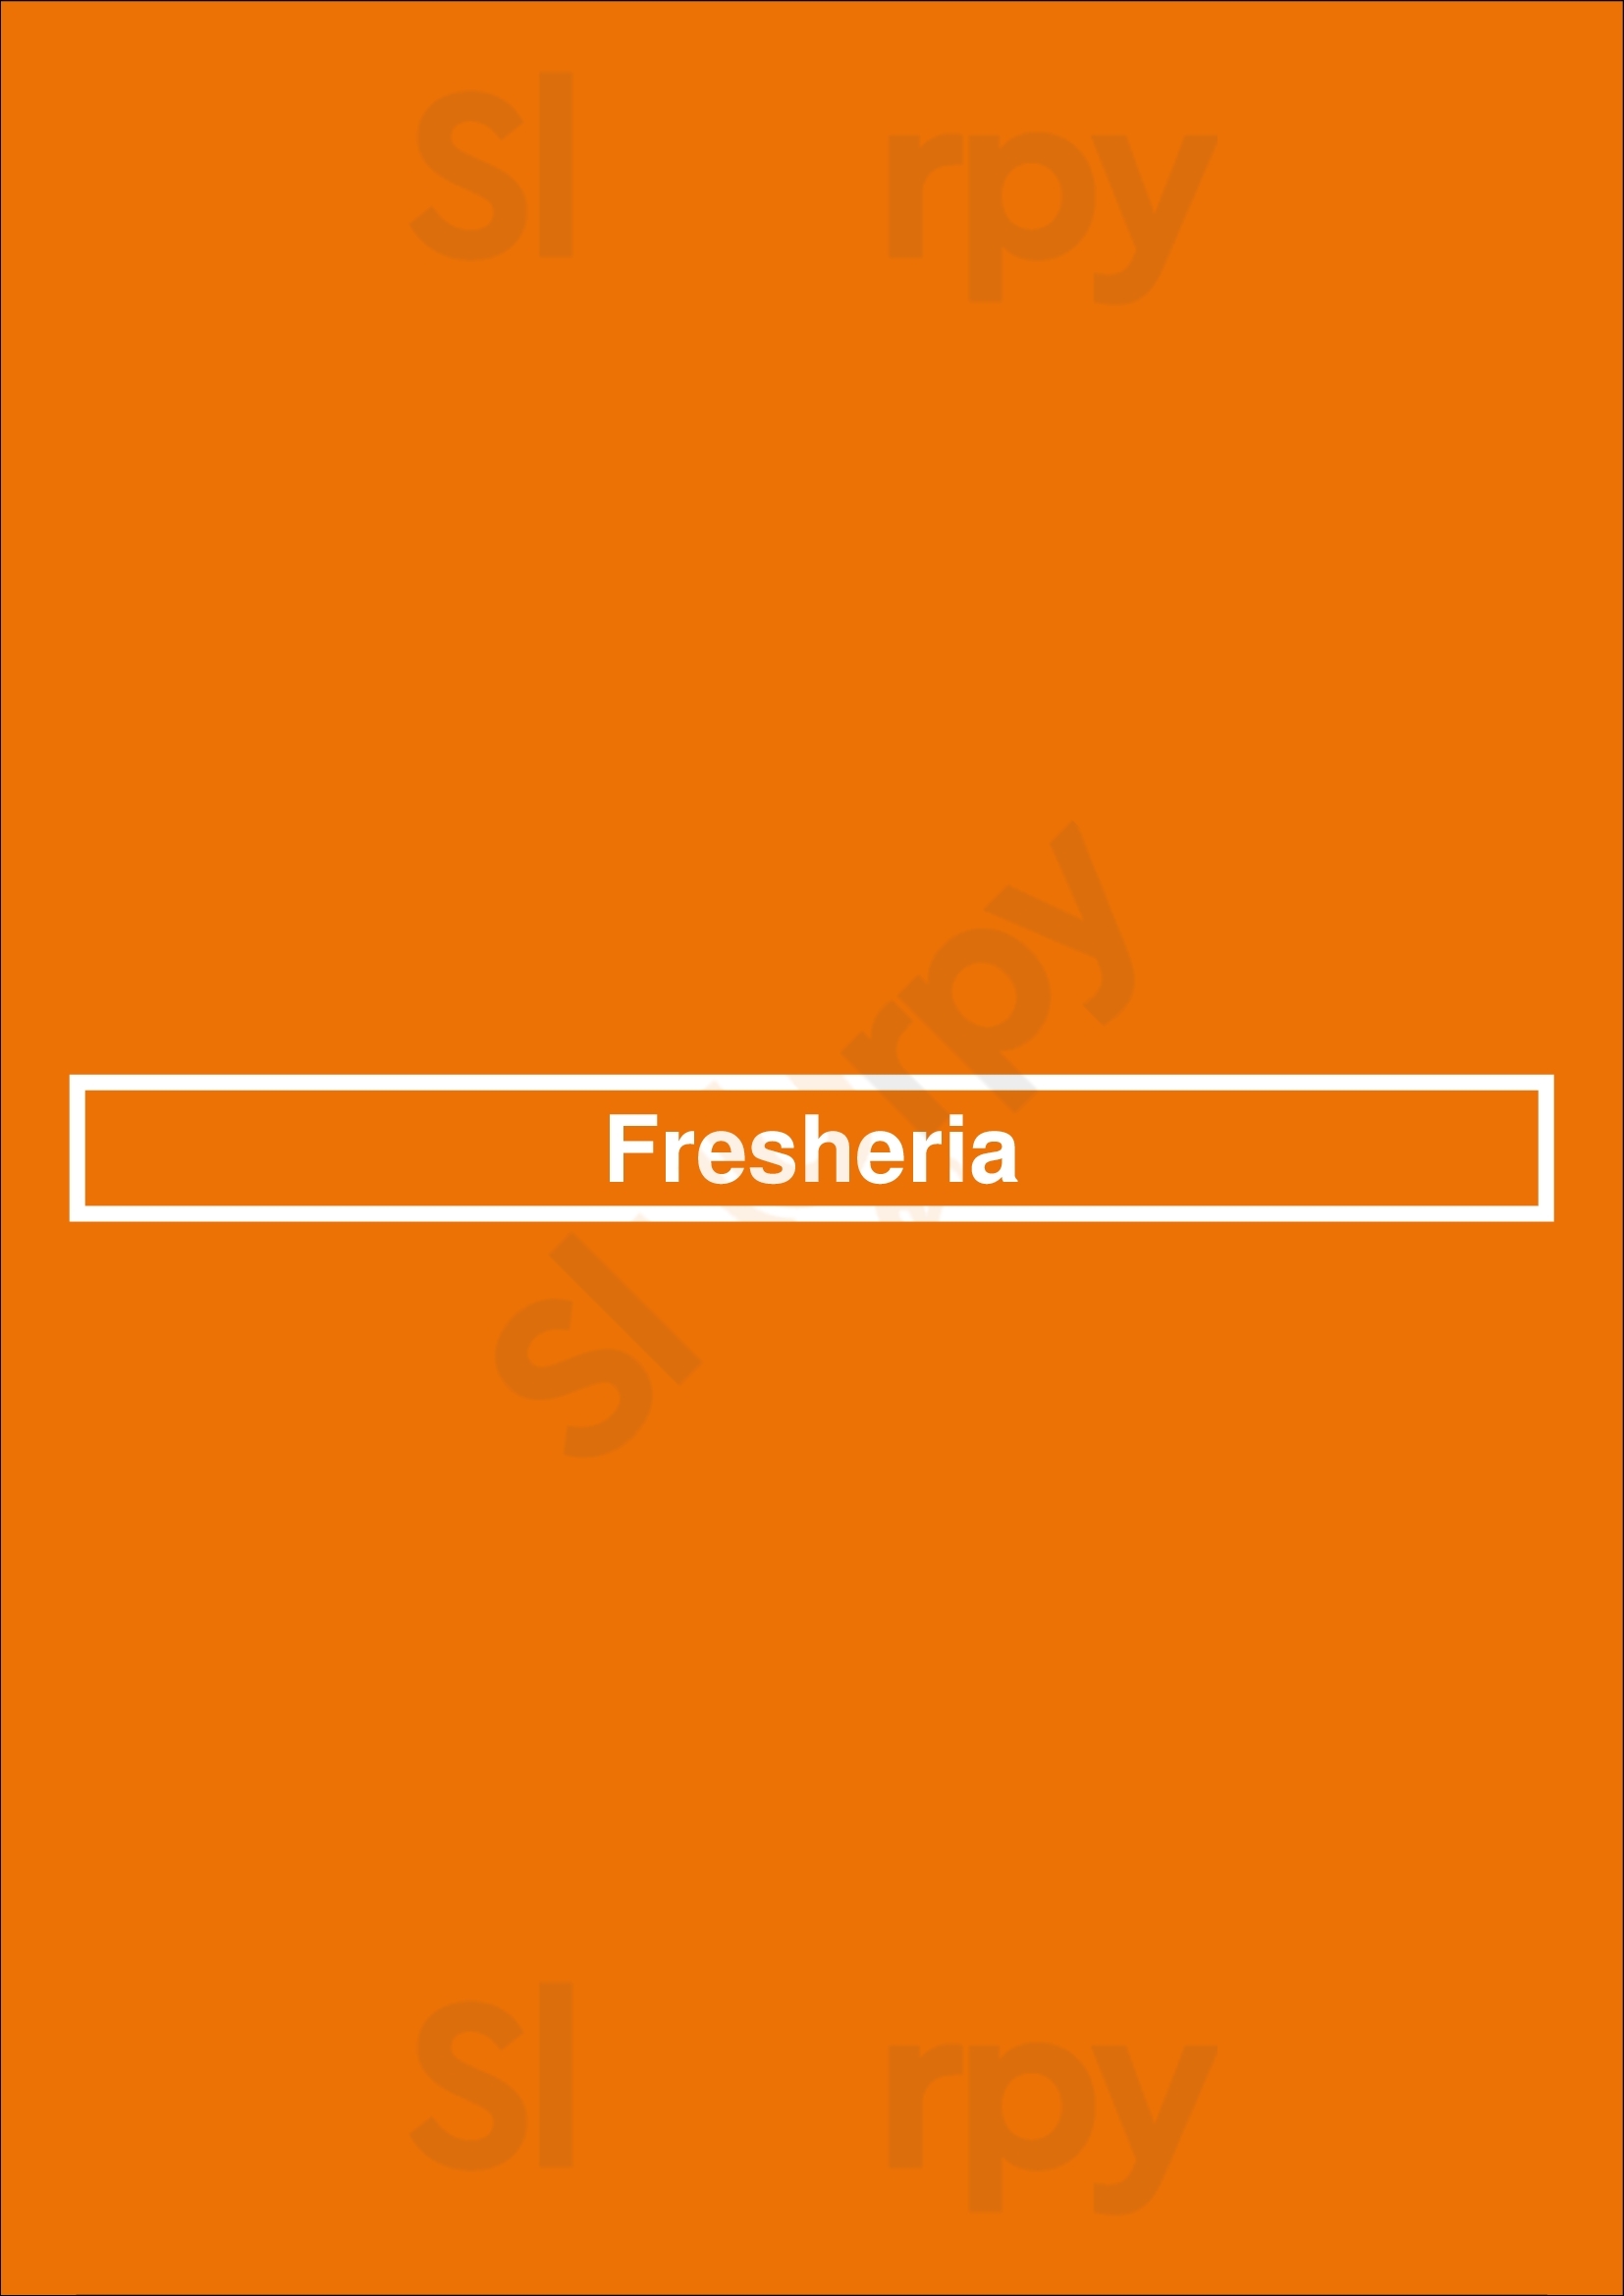 Fresheria La Jolla Menu - 1